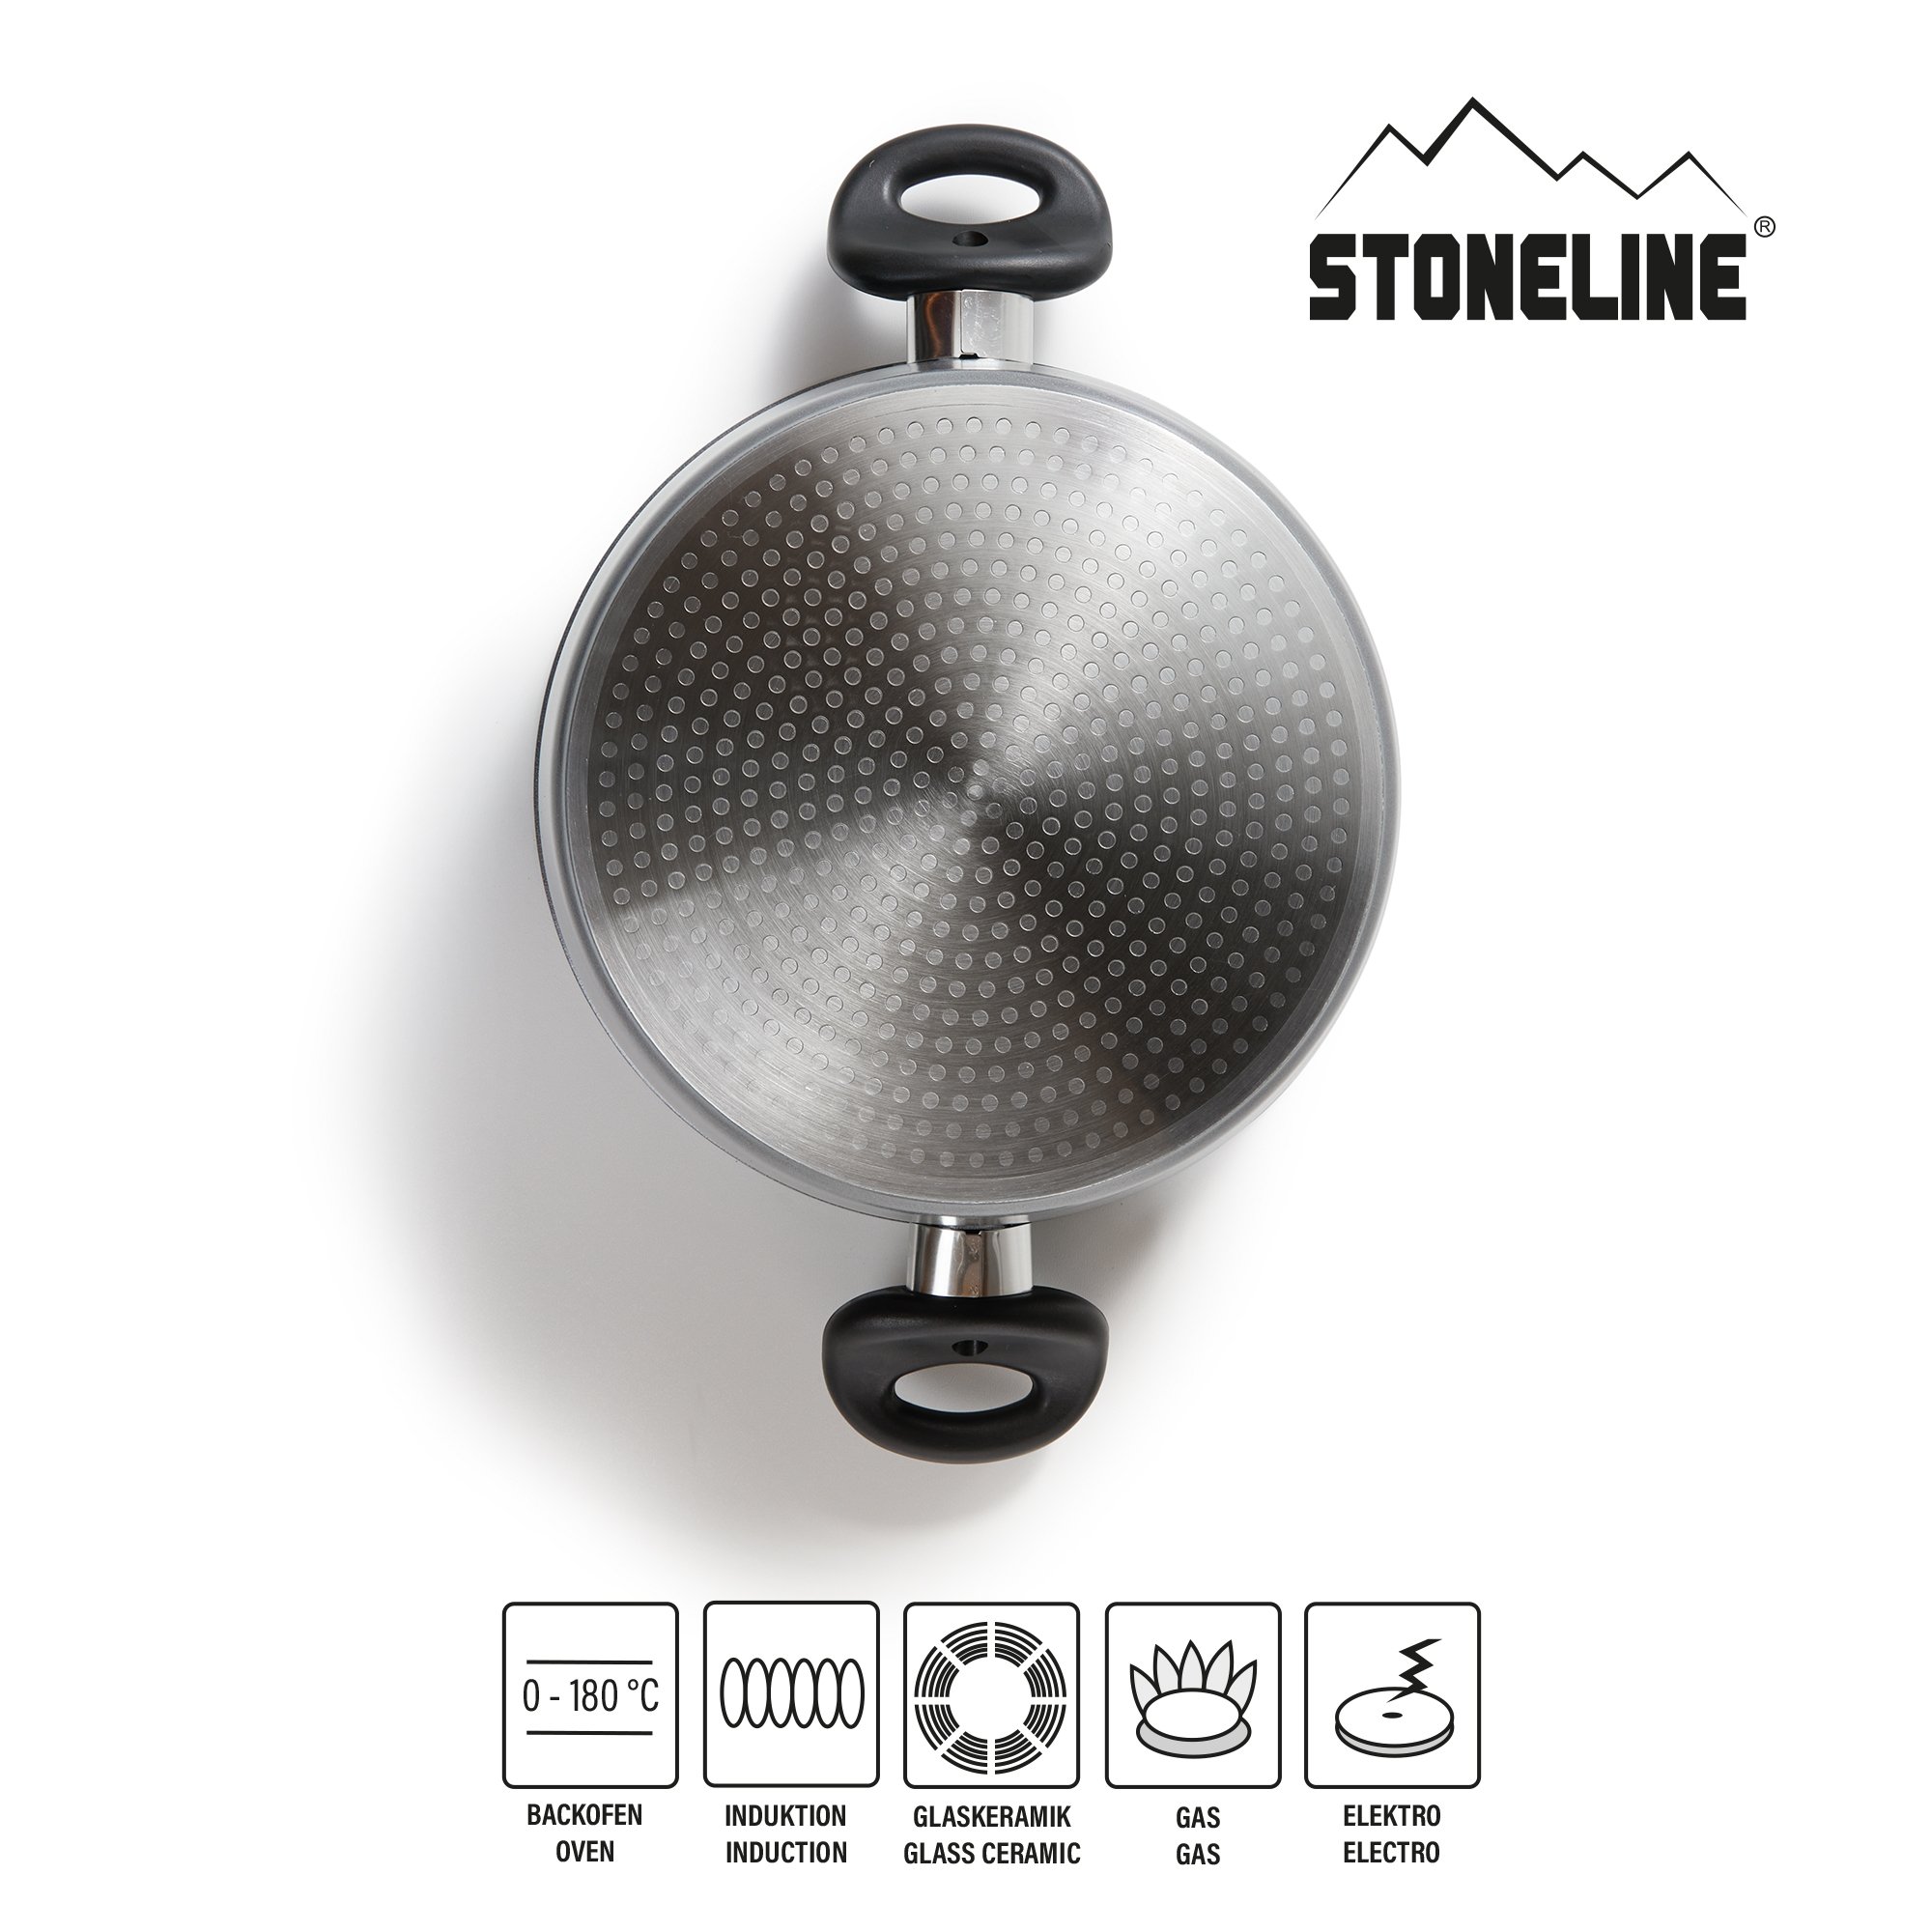 STONELINE® Topfset 6-teilig mit Glasdeckel, beschichtete Aluguss Töpfe Backofen & Induktion geeignet